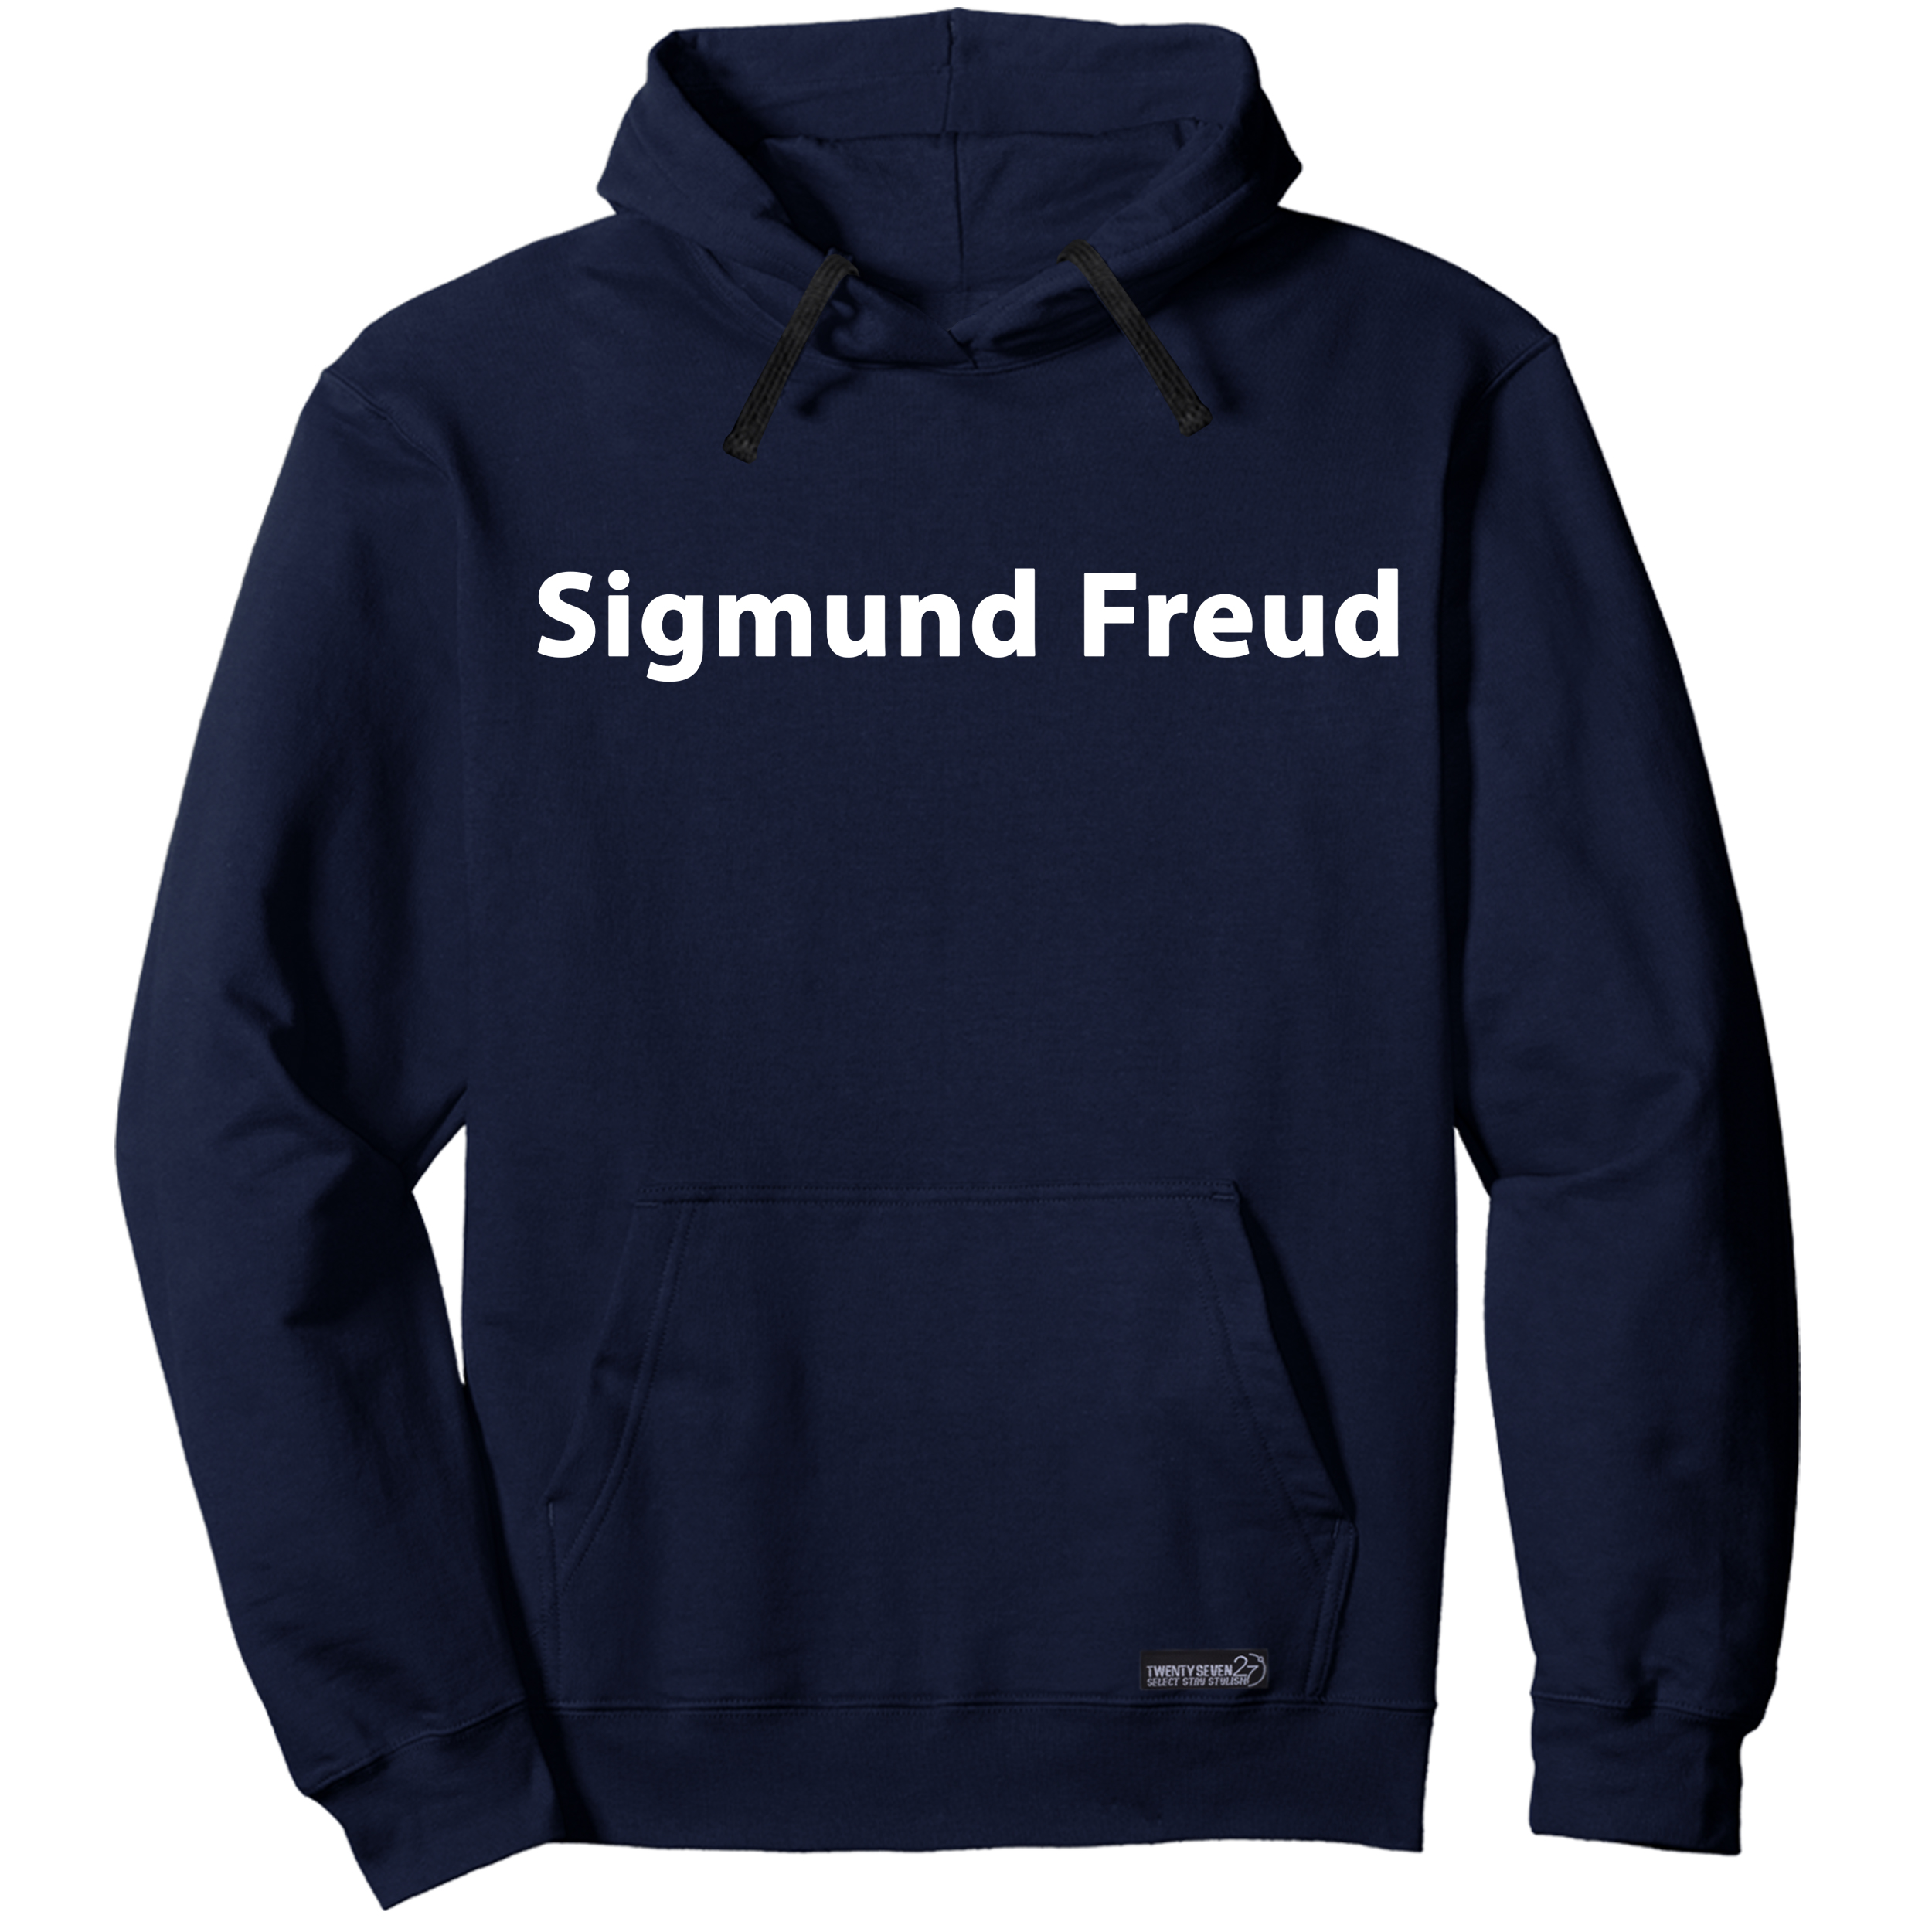 هودی زنانه 27 مدل Sigmund Freud کد MH1549